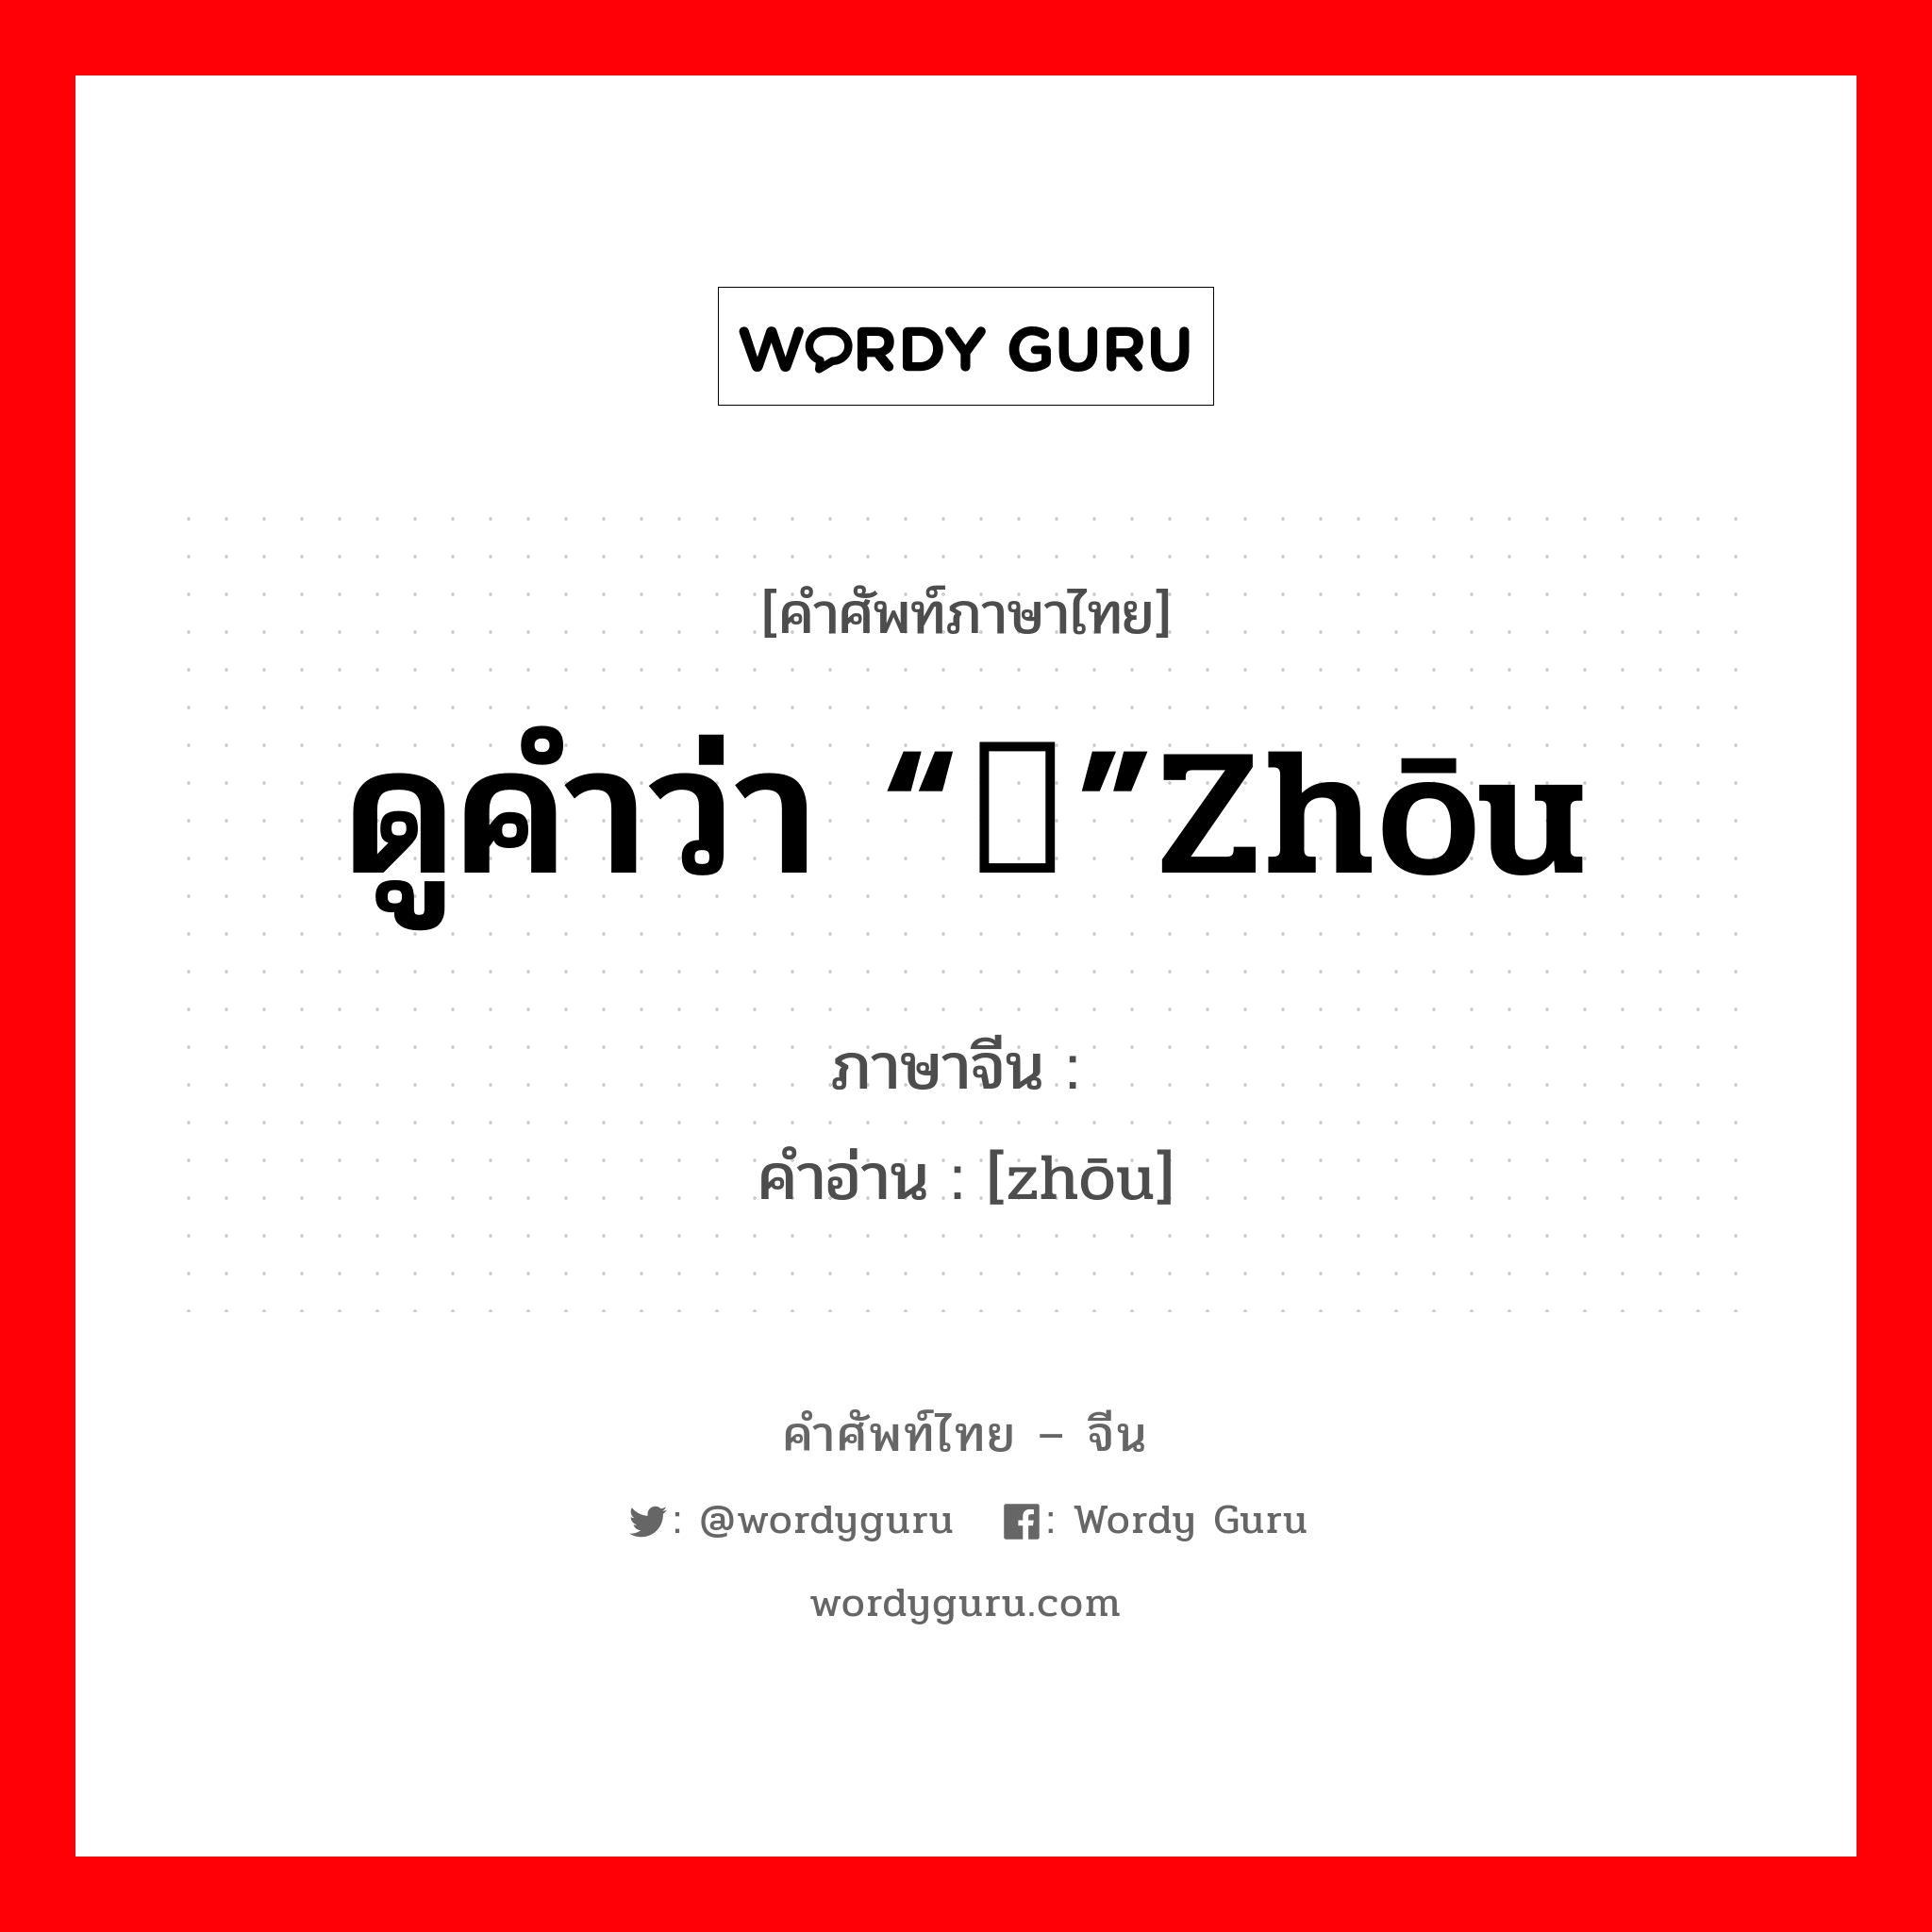 ดูคำว่า “侜”zhōu ภาษาจีนคืออะไร, คำศัพท์ภาษาไทย - จีน ดูคำว่า “侜”zhōu ภาษาจีน 诪 คำอ่าน [zhōu]